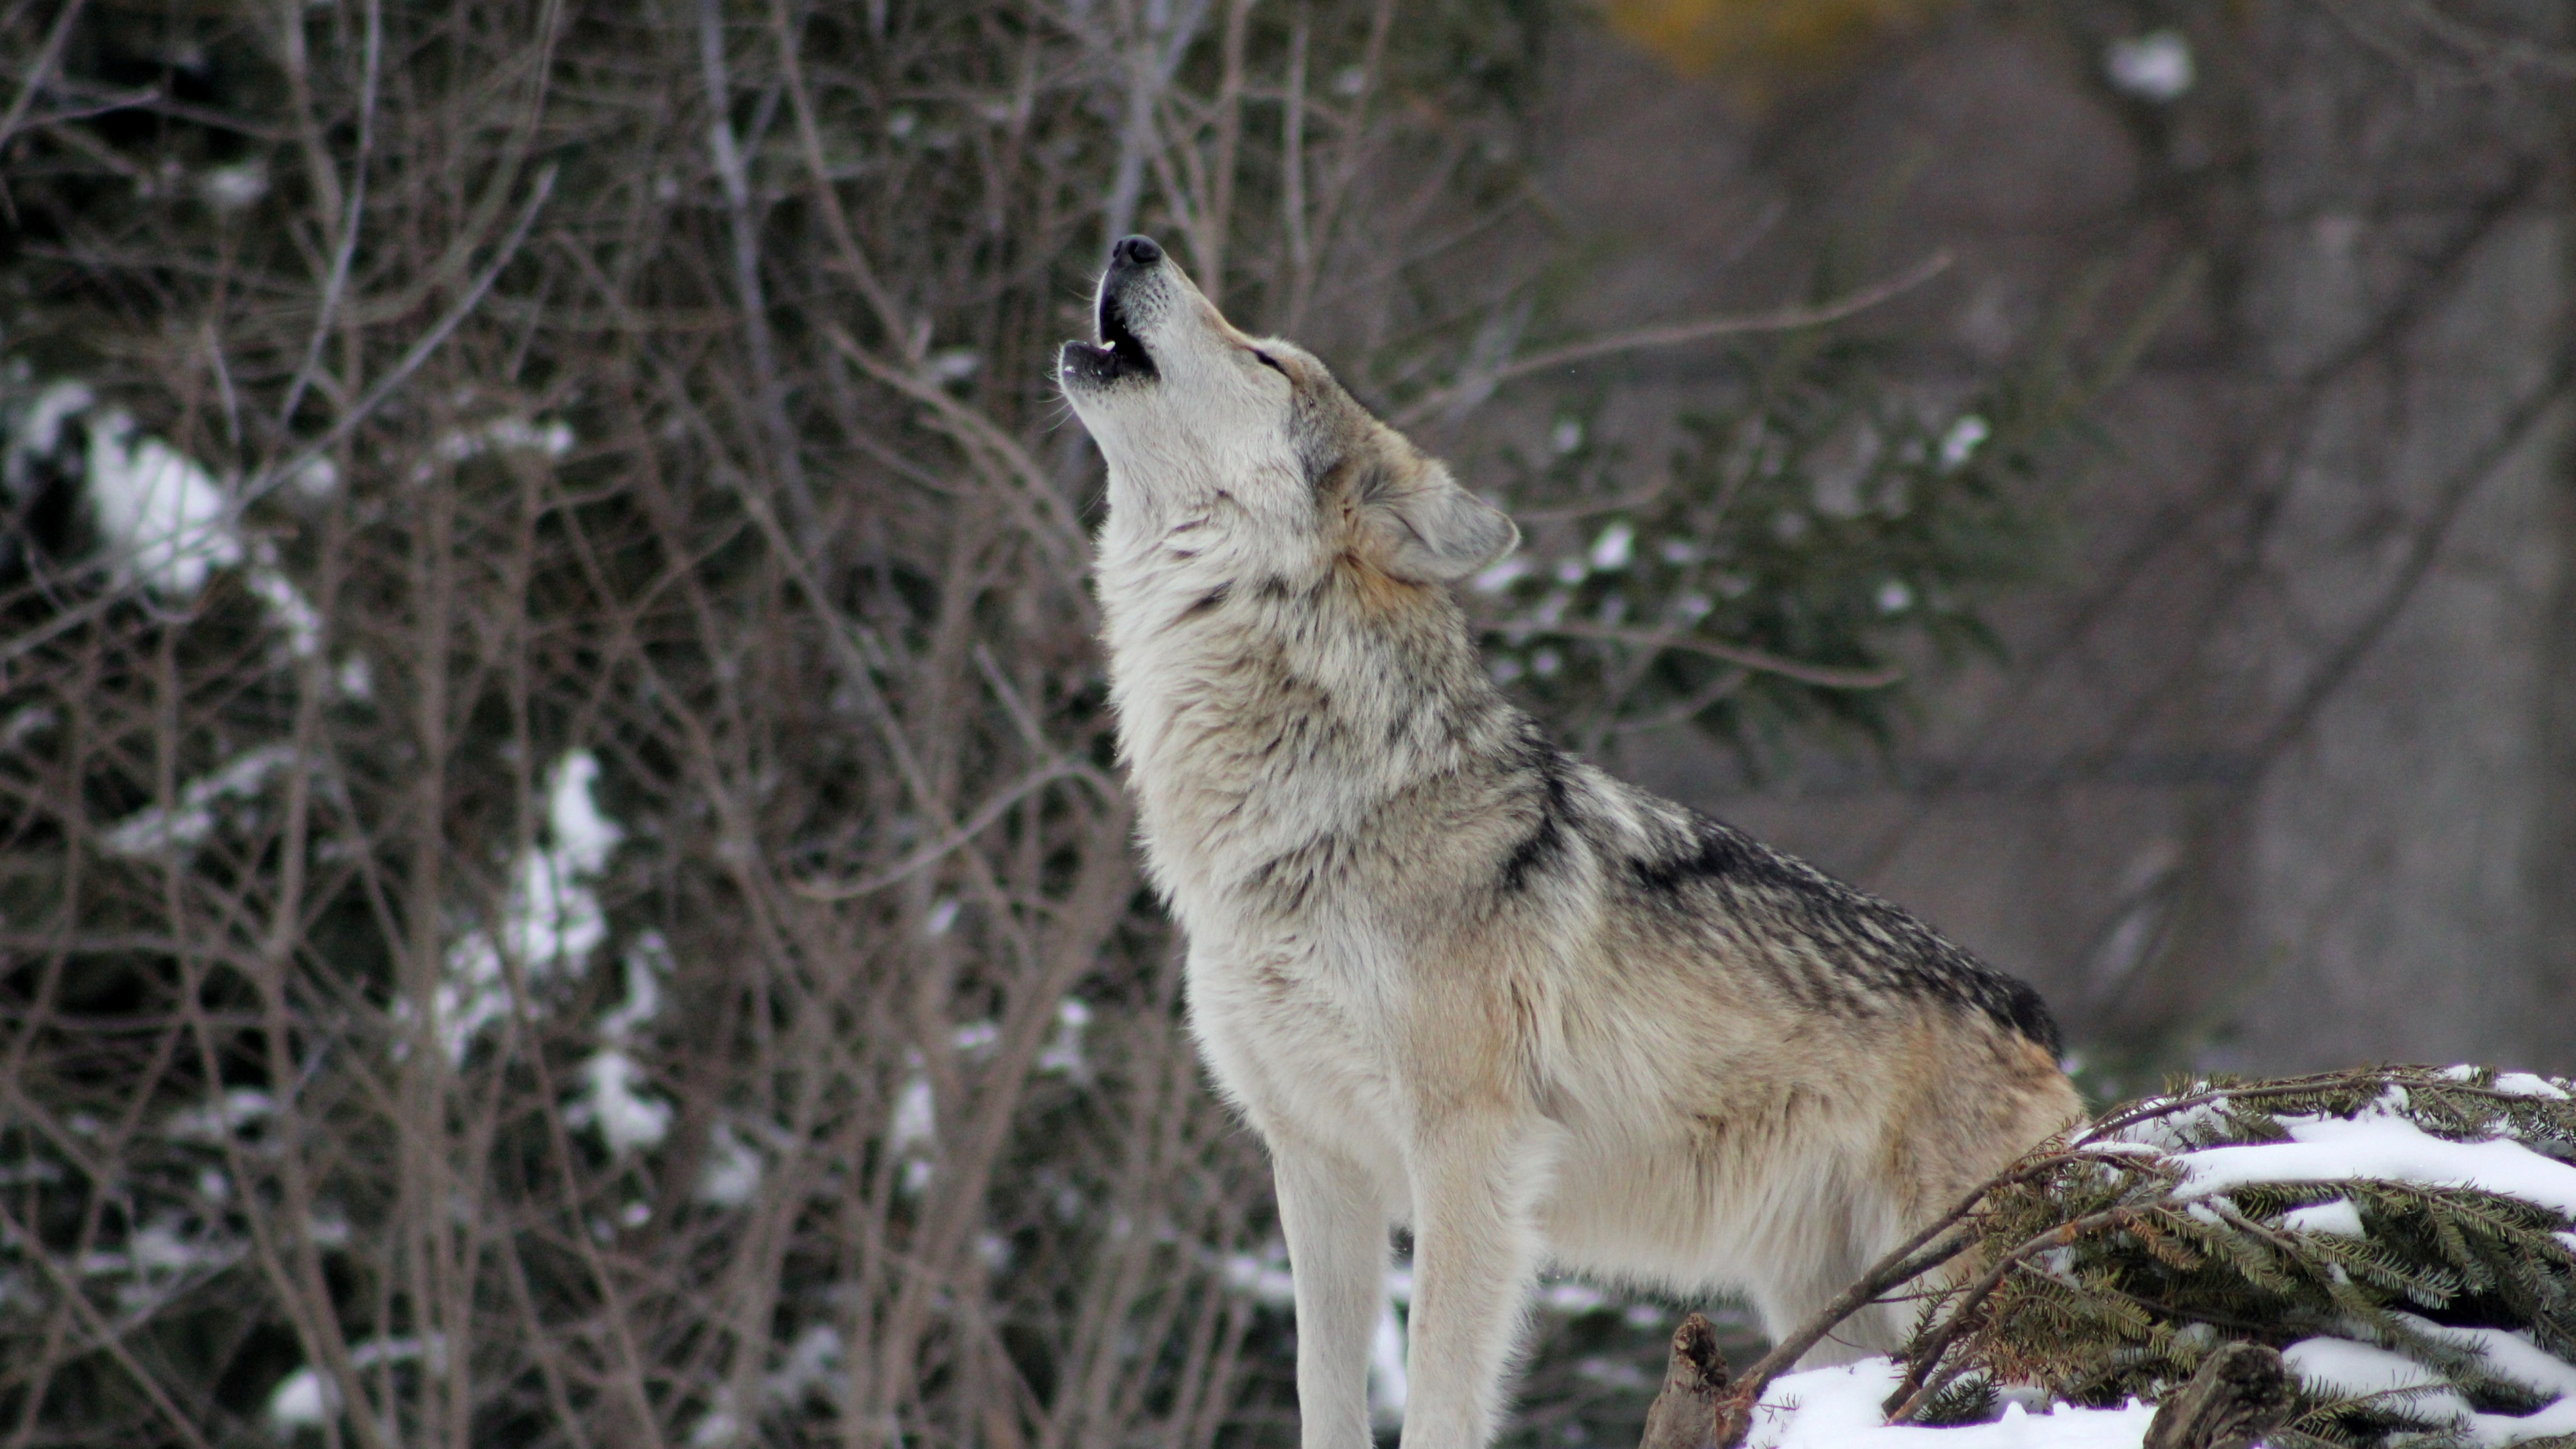 土狼, 狼, 野生动物, 那只狼狗, 狗喜欢哺乳动物 壁纸 3840x2160 允许